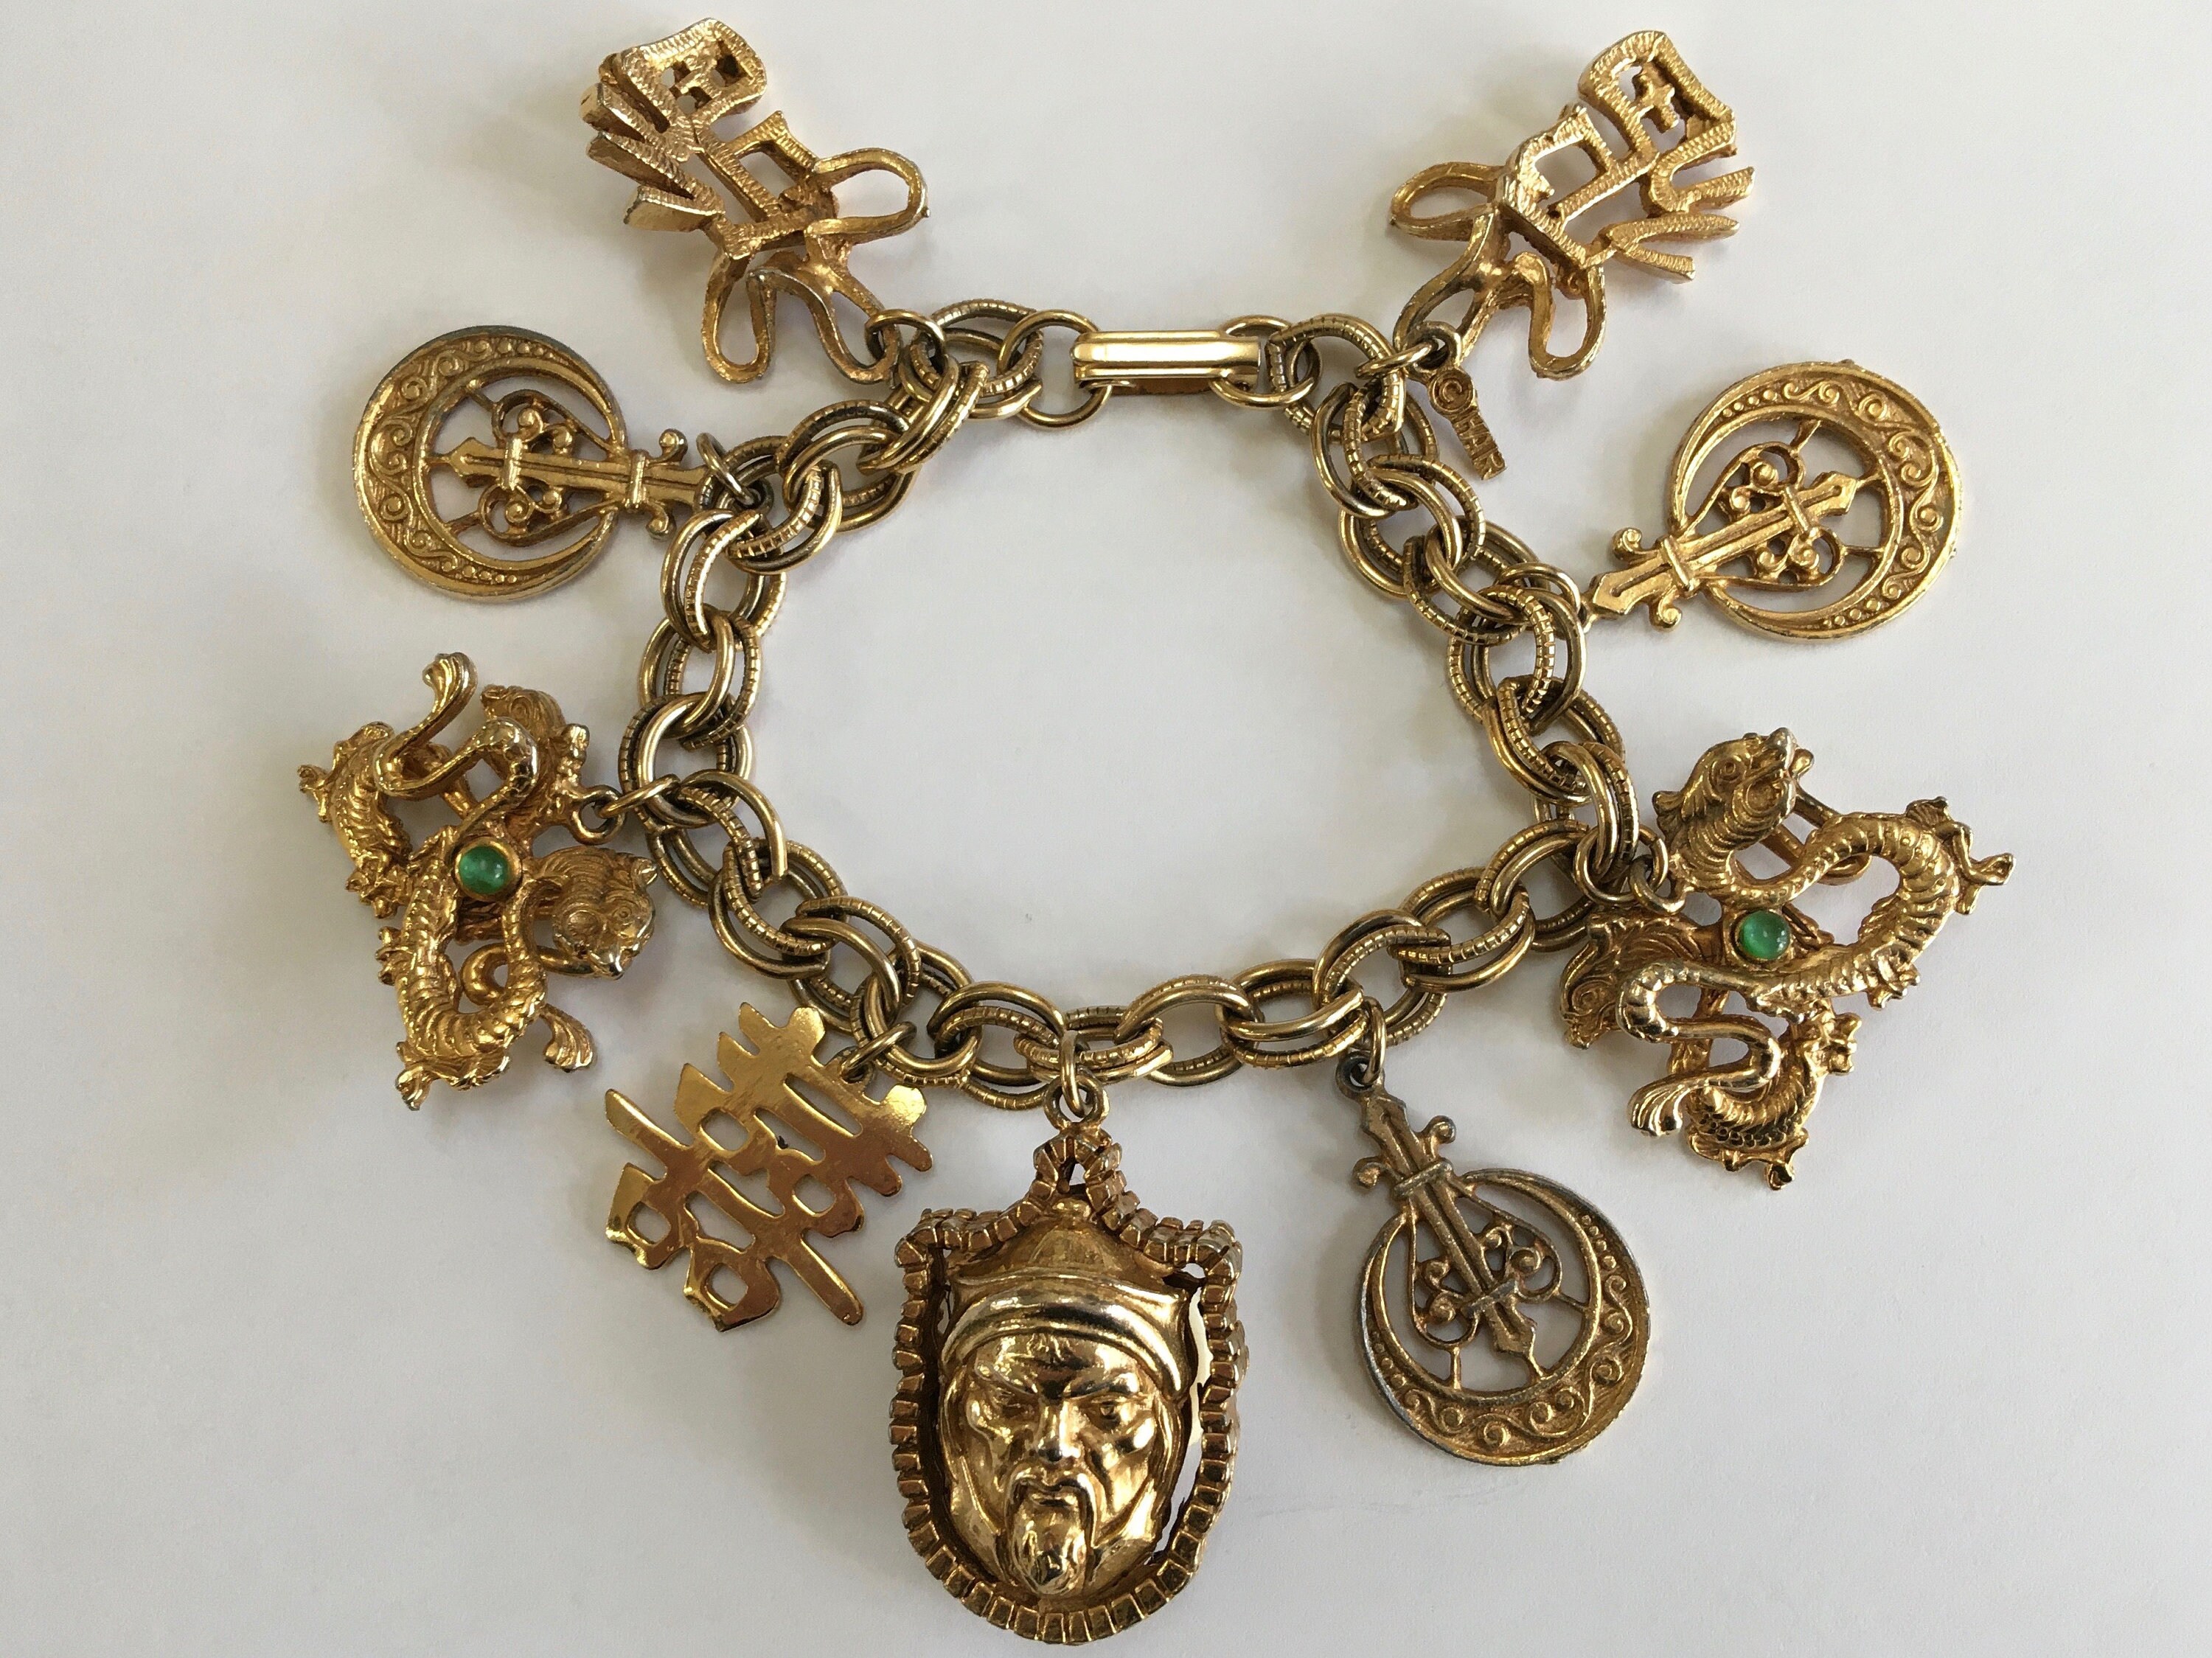 Vintage Ocean Themed 14K Gold Charm Bracelet